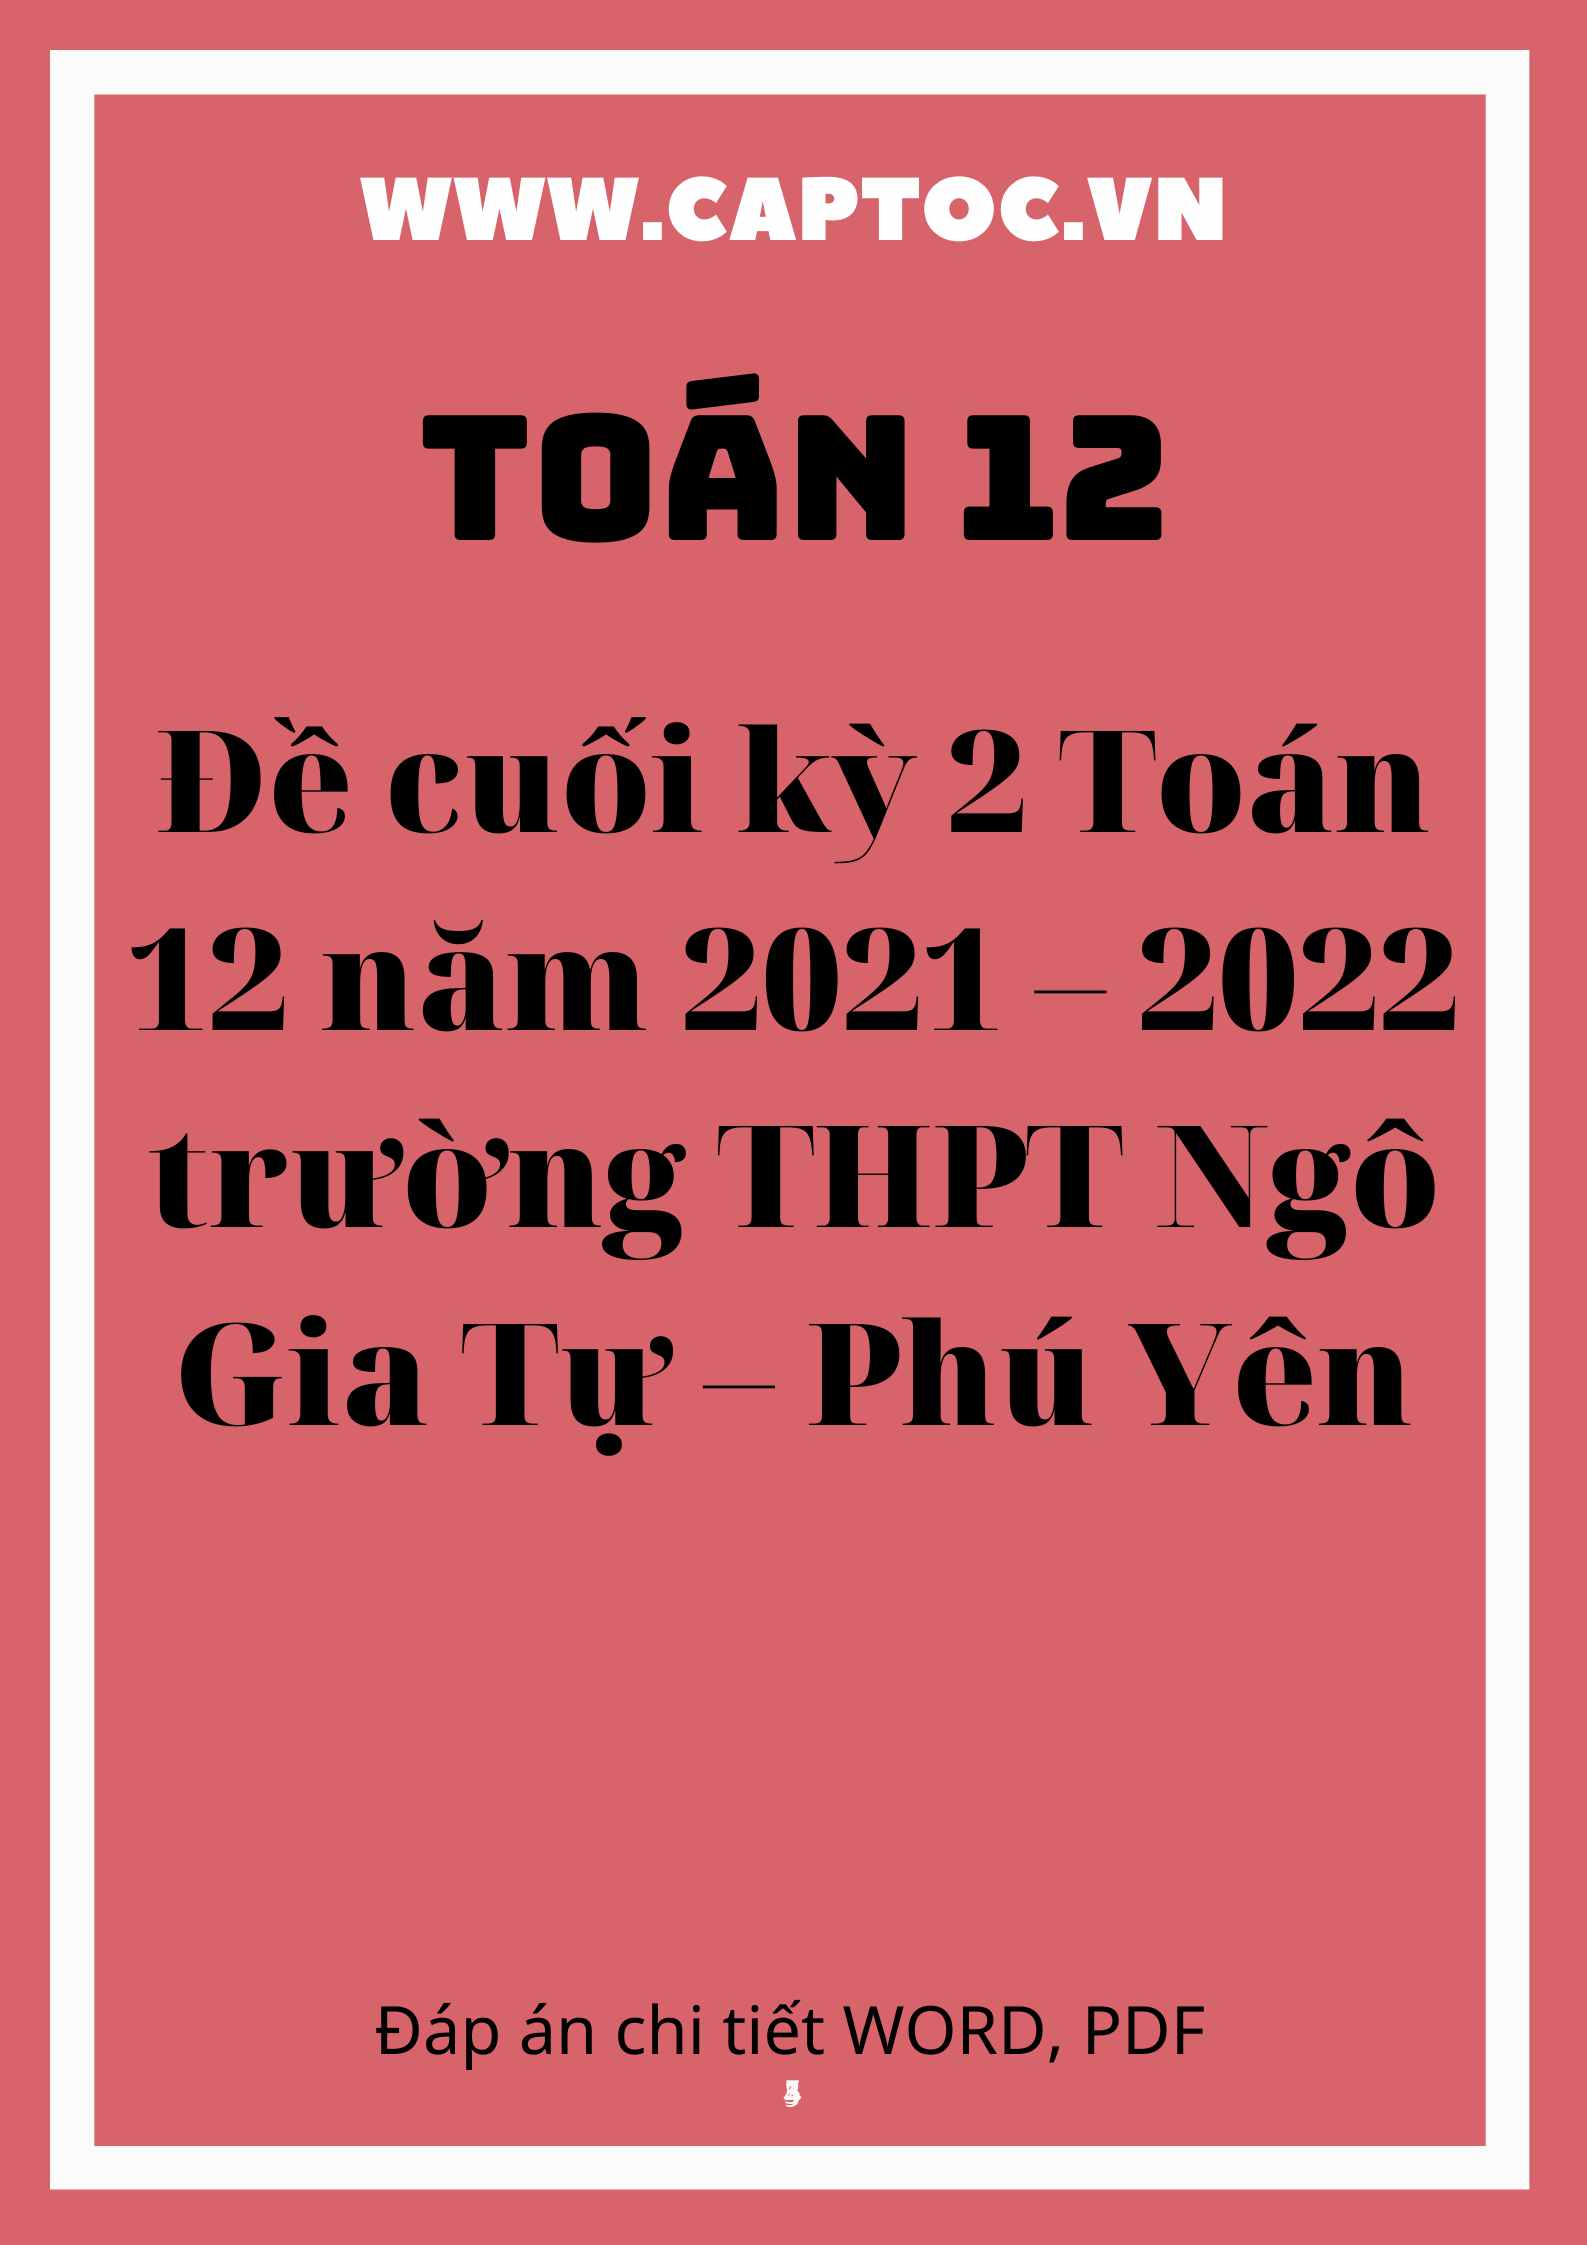 Đề cuối kỳ 2 Toán 12 năm 2021 – 2022 trường THPT Ngô Gia Tự – Phú Yên